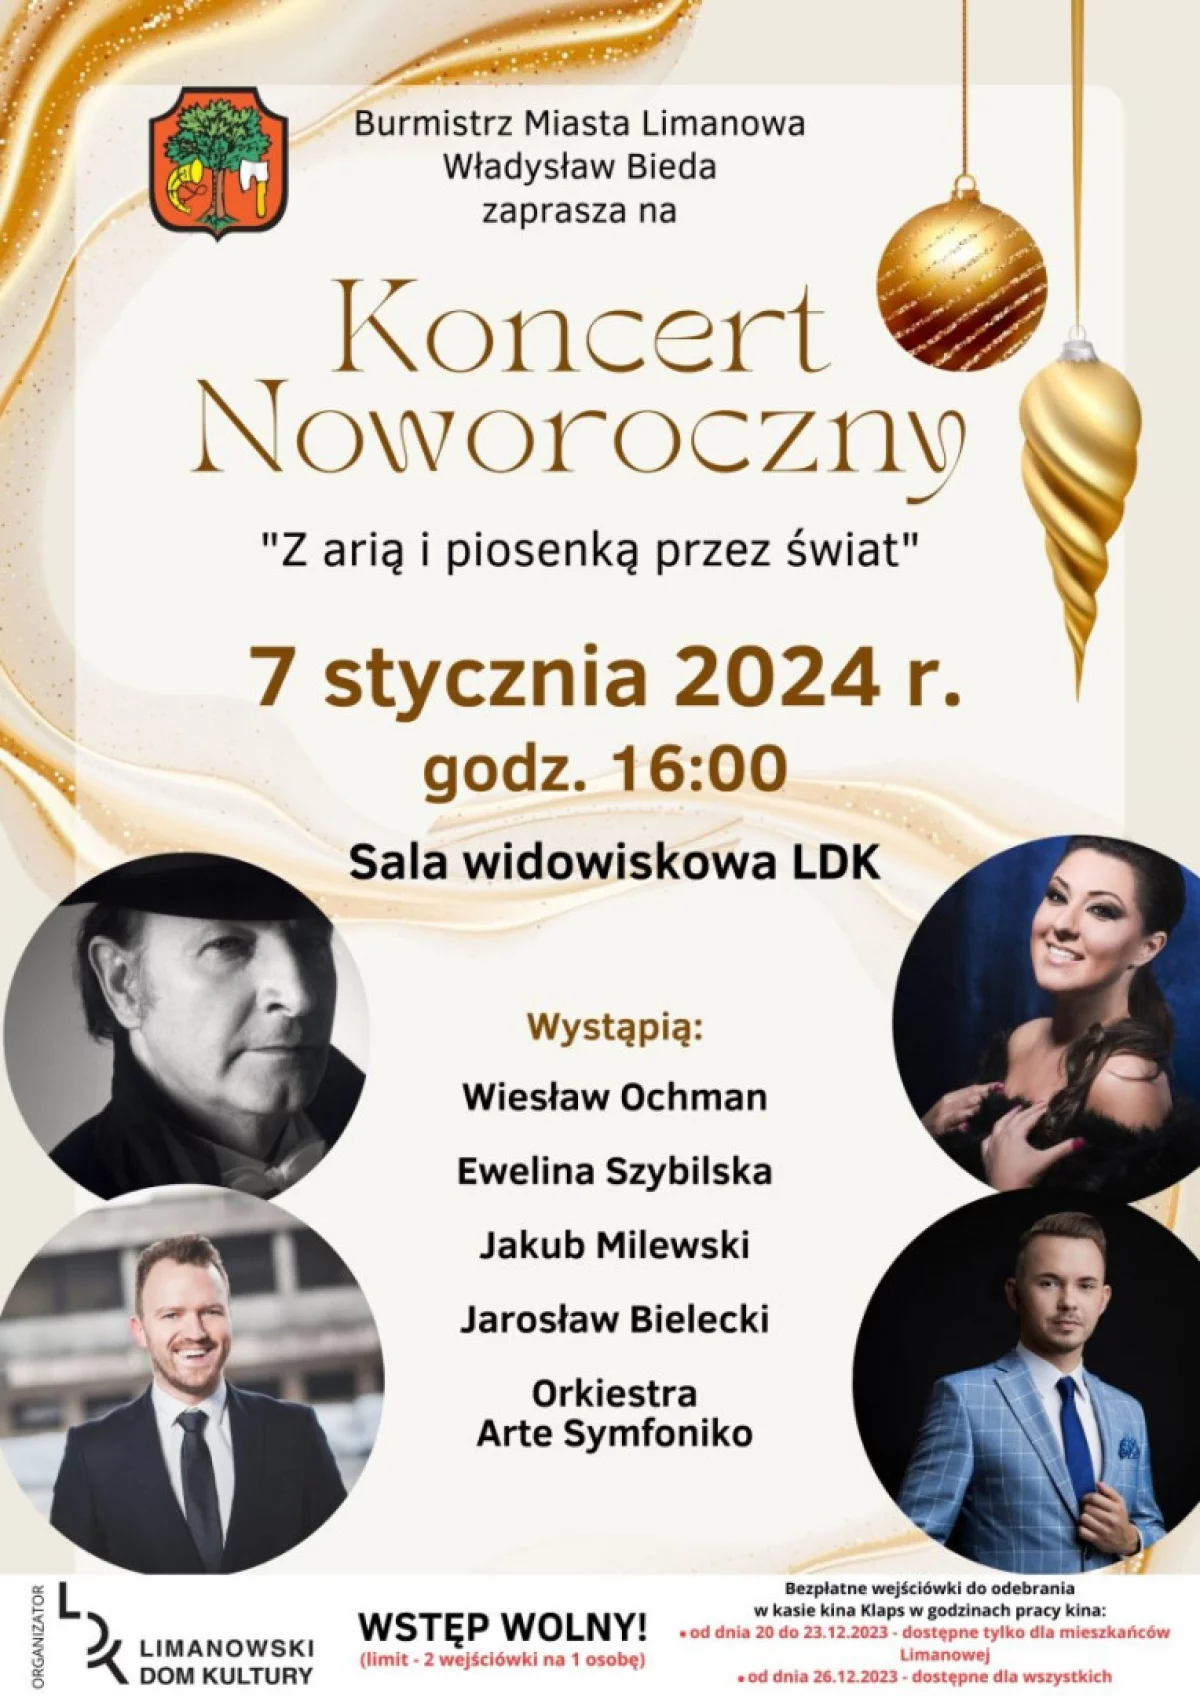 Burmistrz Miasta Limanowa zaprasza na Koncert Noworoczny do Limanowskiego Domu Kultury